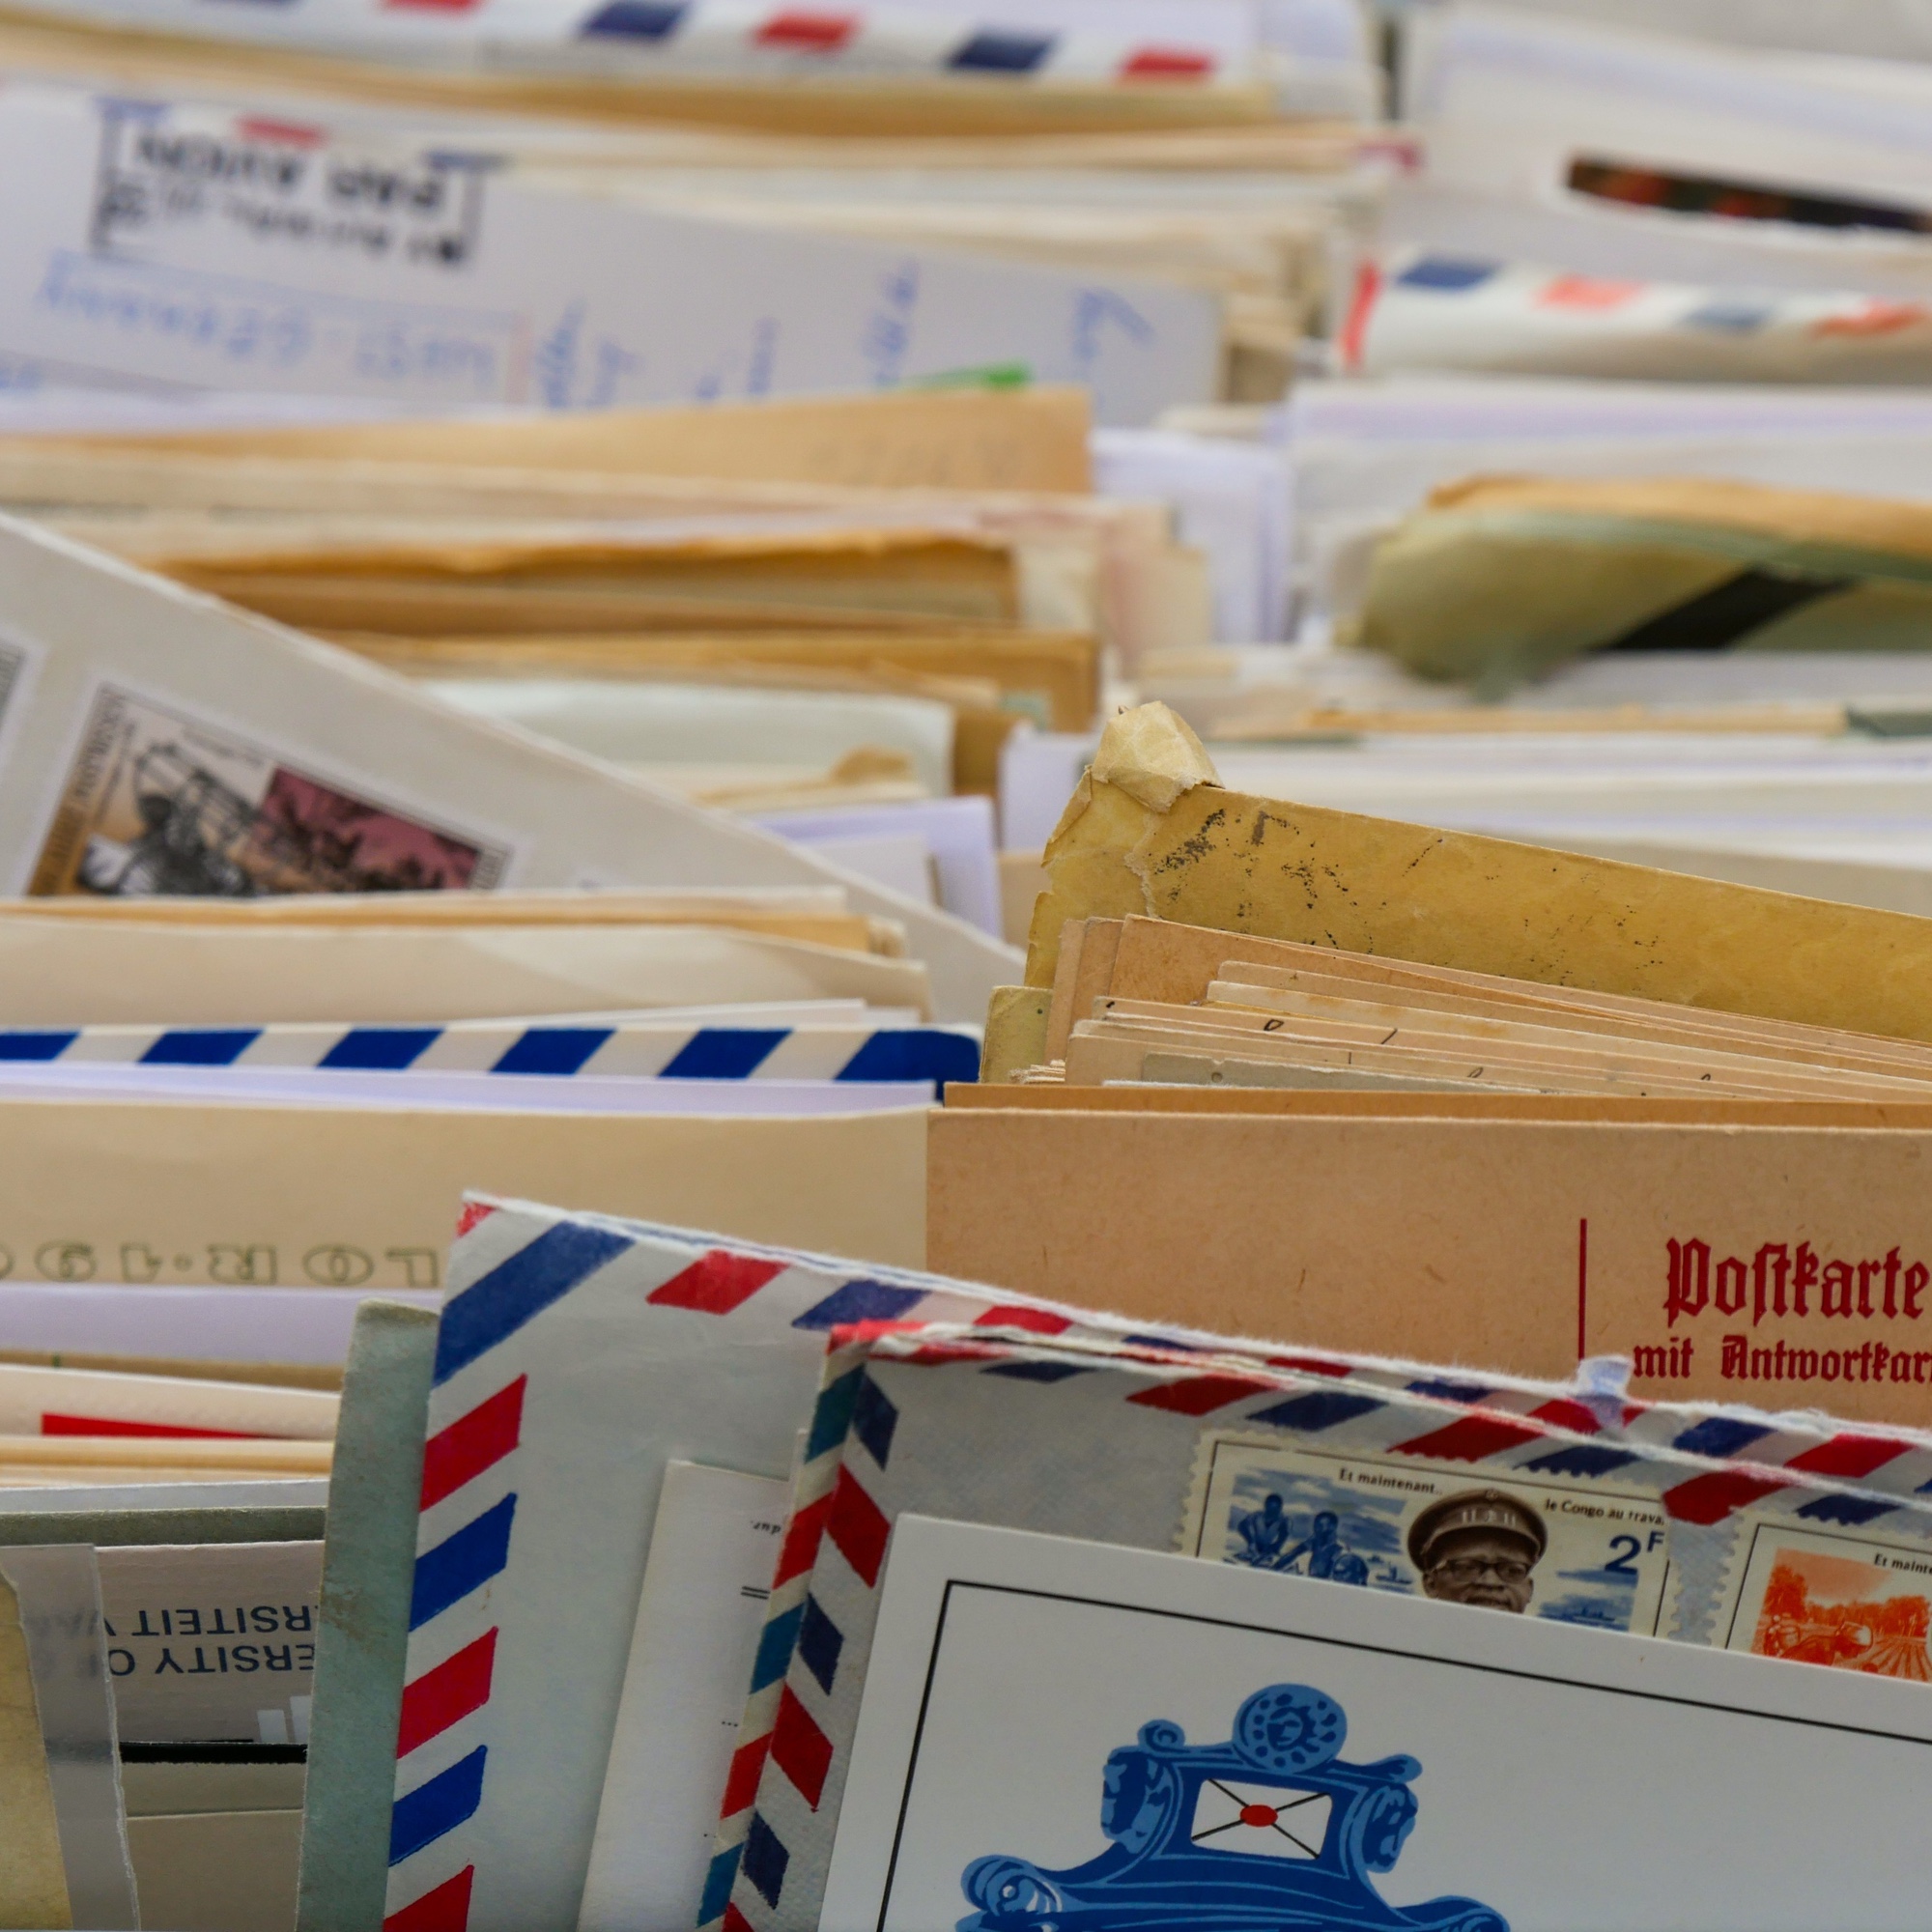 IncaMail: Echte E-Mails von Behörden oder Phishing-E-Mails?